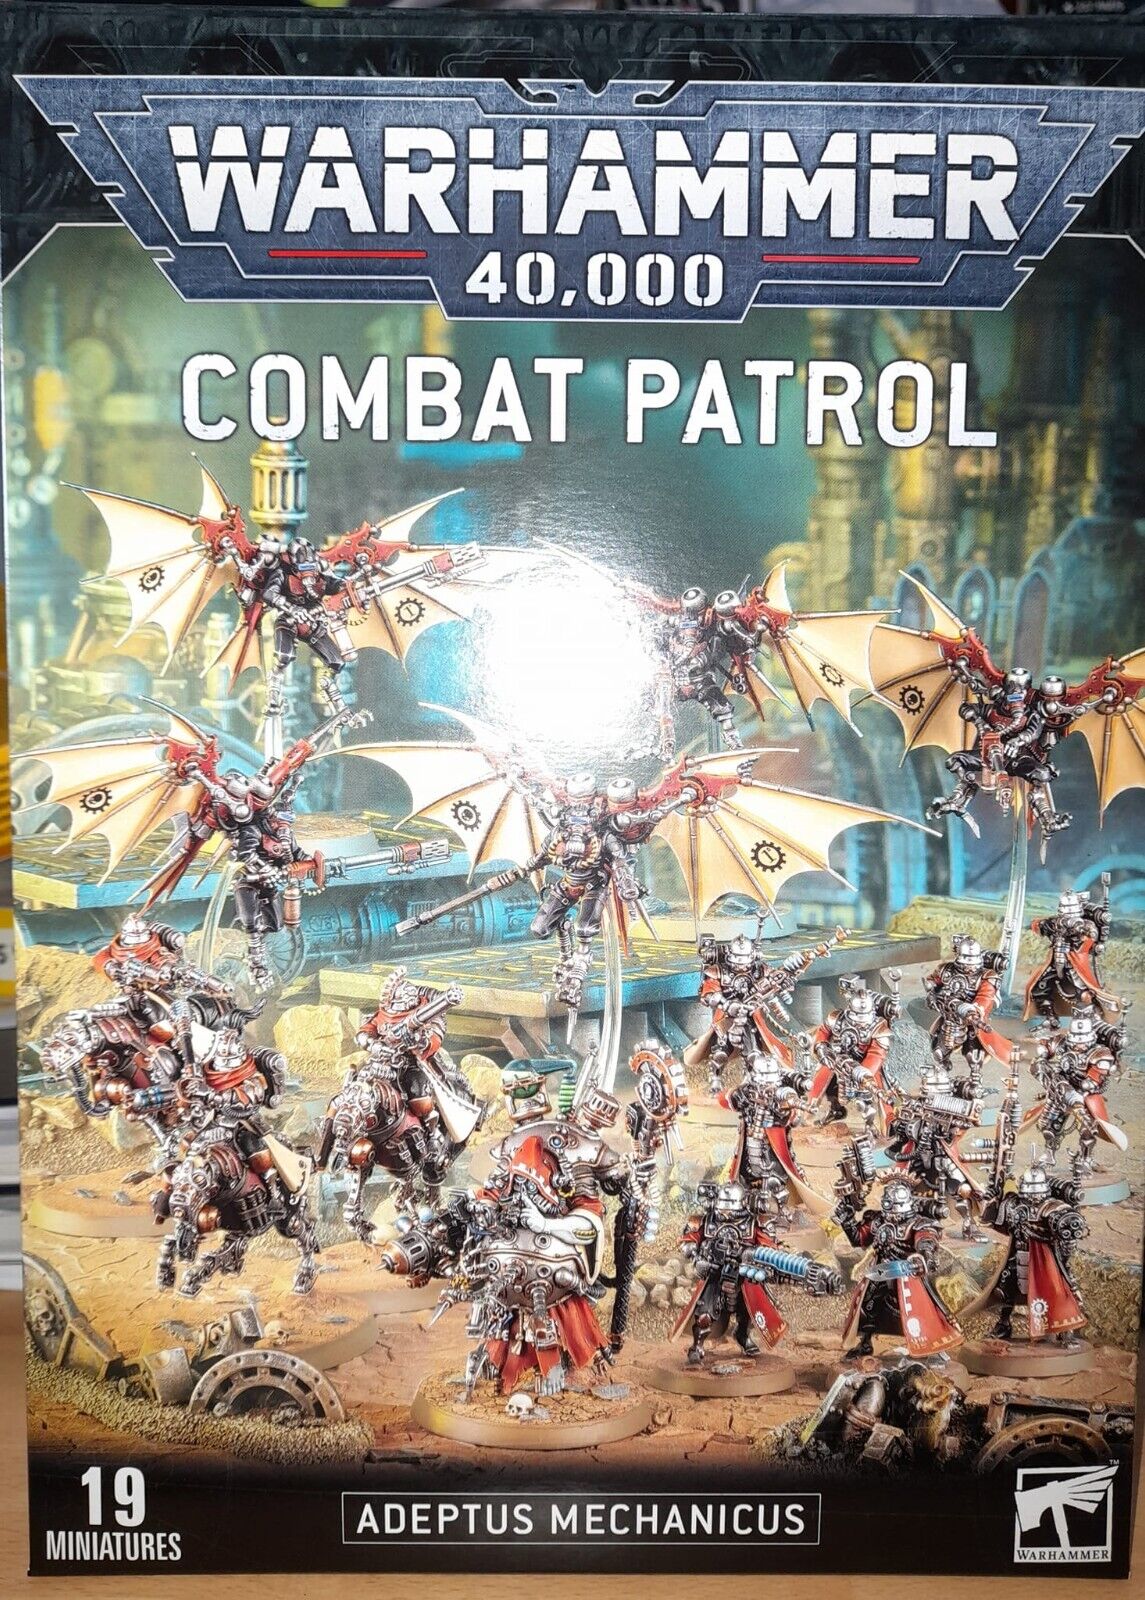 Combat Patrol: Adeptus Mechanicus - Warhammer 40k Box - Brand New